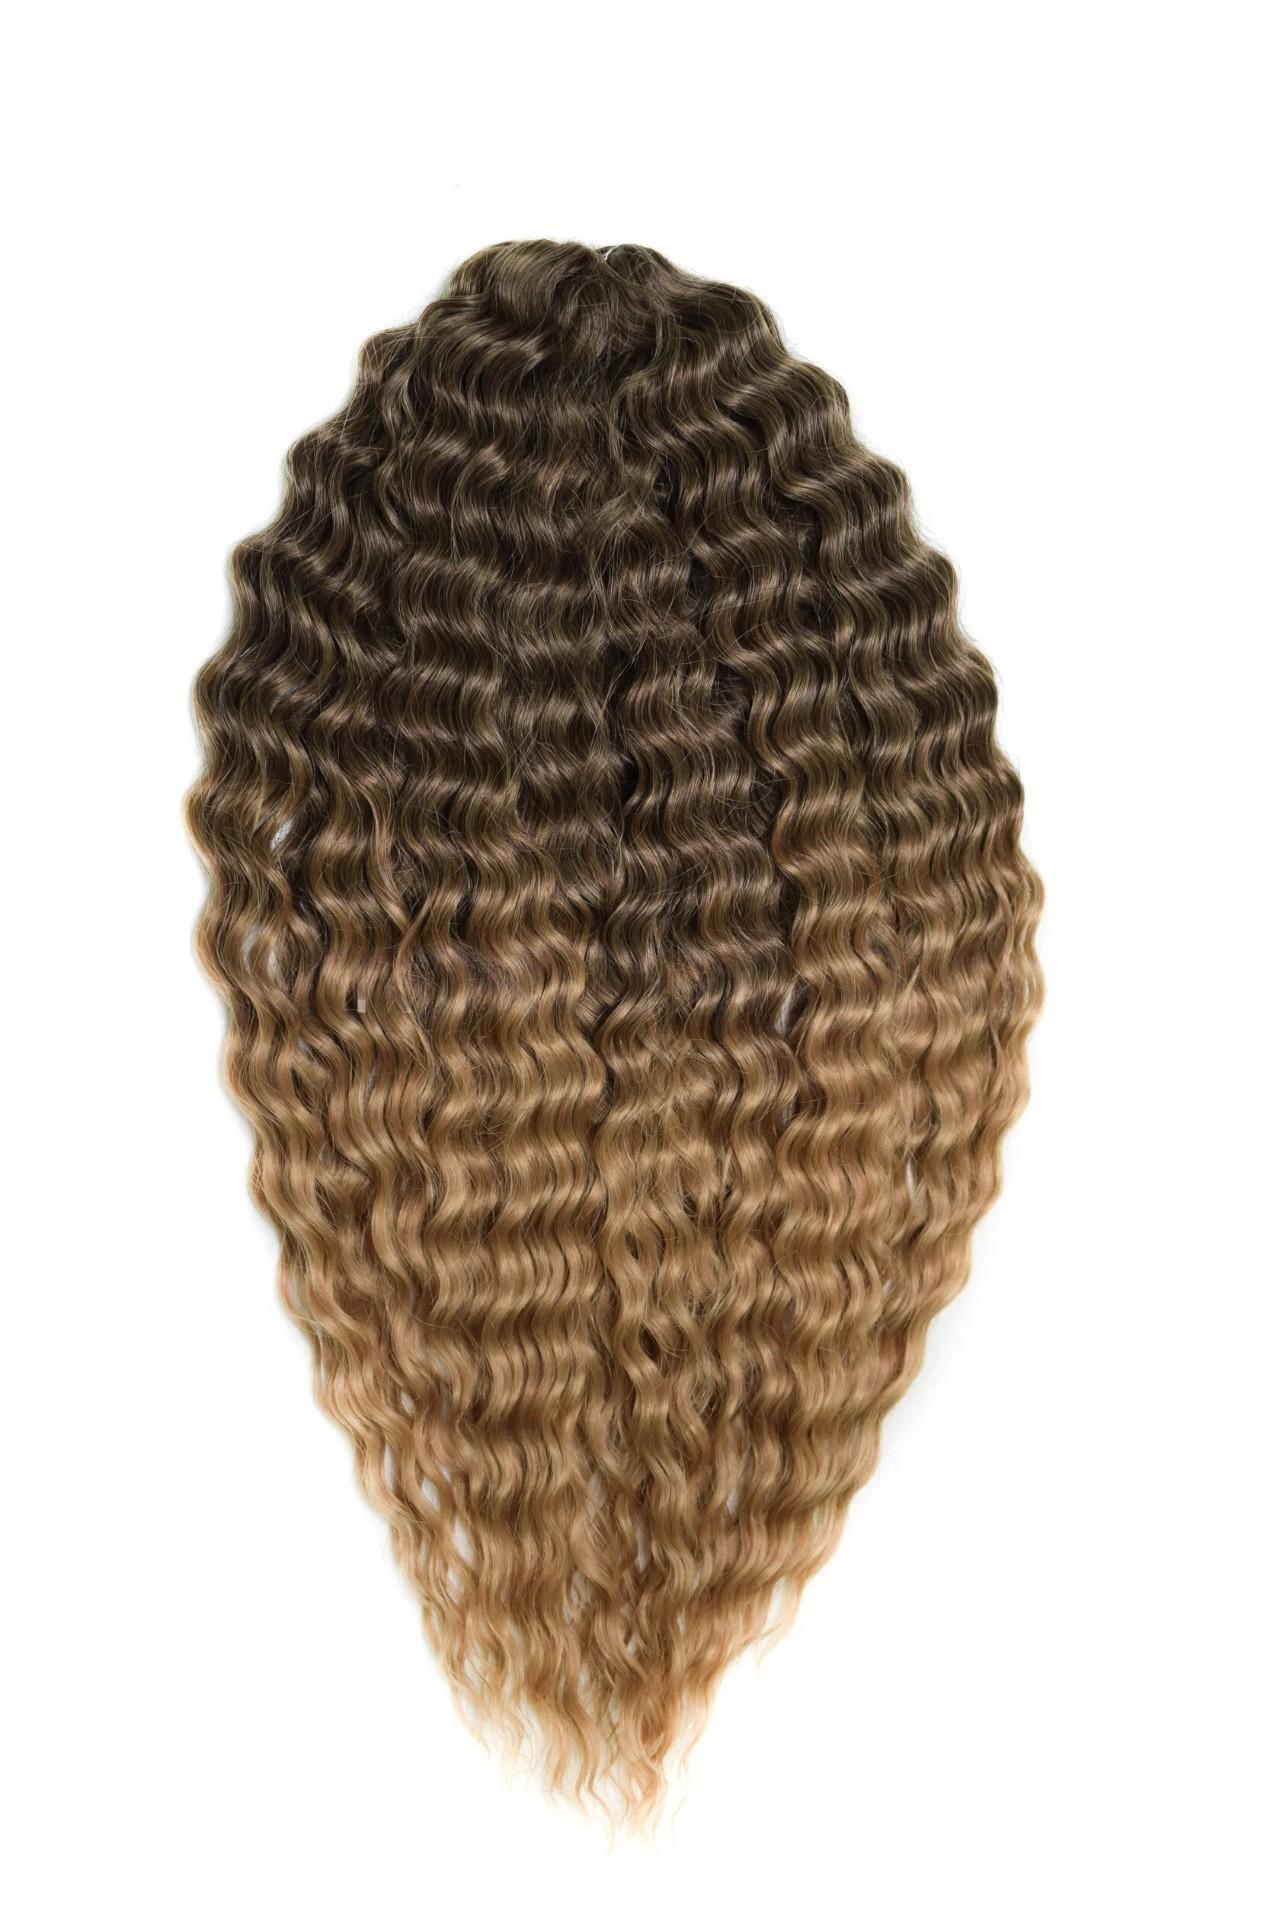 Афрокудри для плетения волос Ariel цвет T8 60 русый длина 55см вес 300г